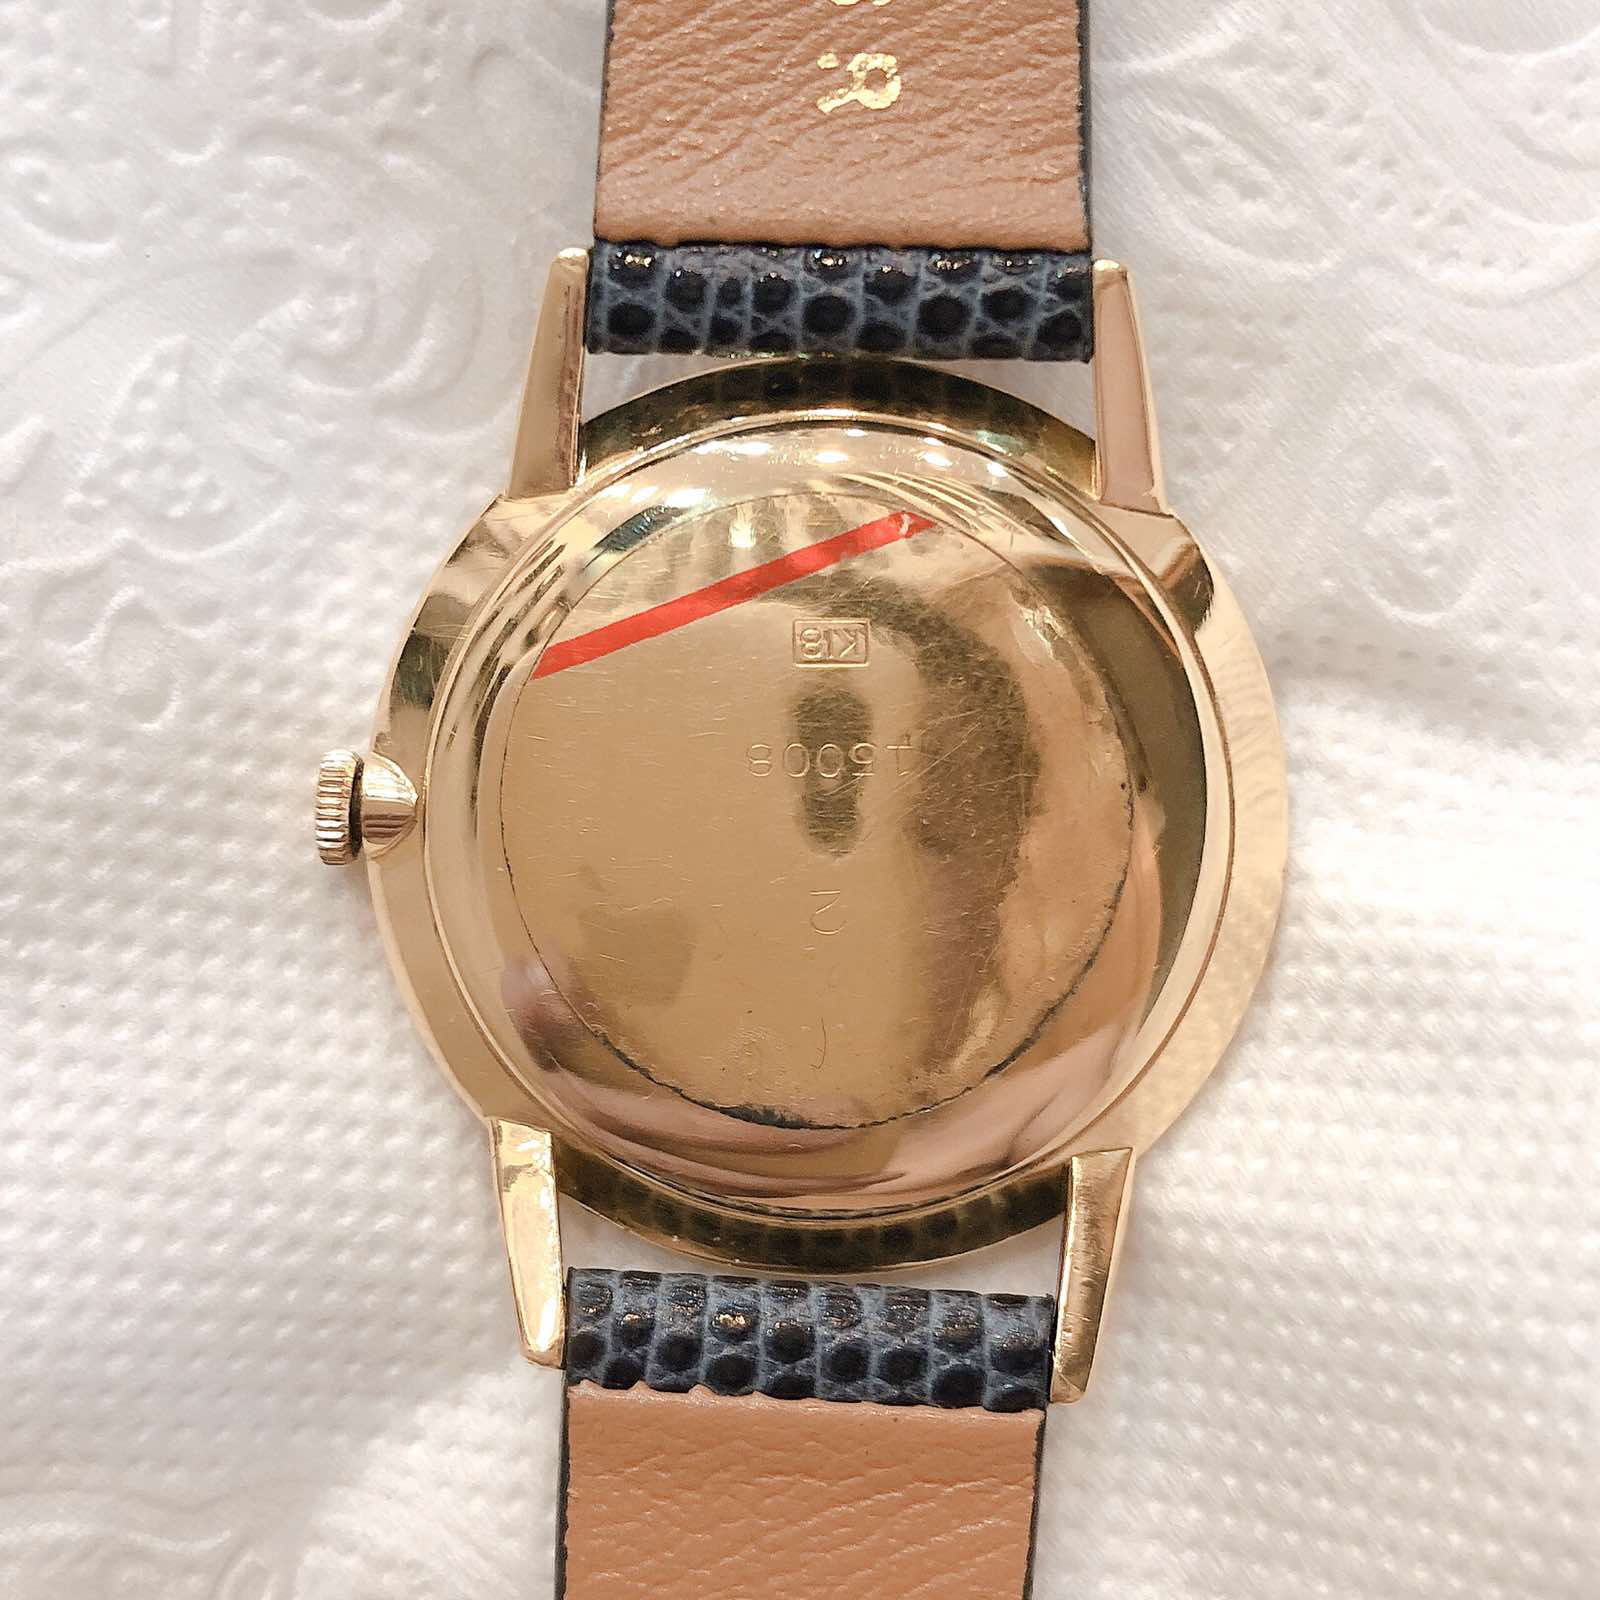 Đồng hồ cổ Seiko Goldfeather kim đĩa vàng đúc đặc 18k lên dây nhật bản